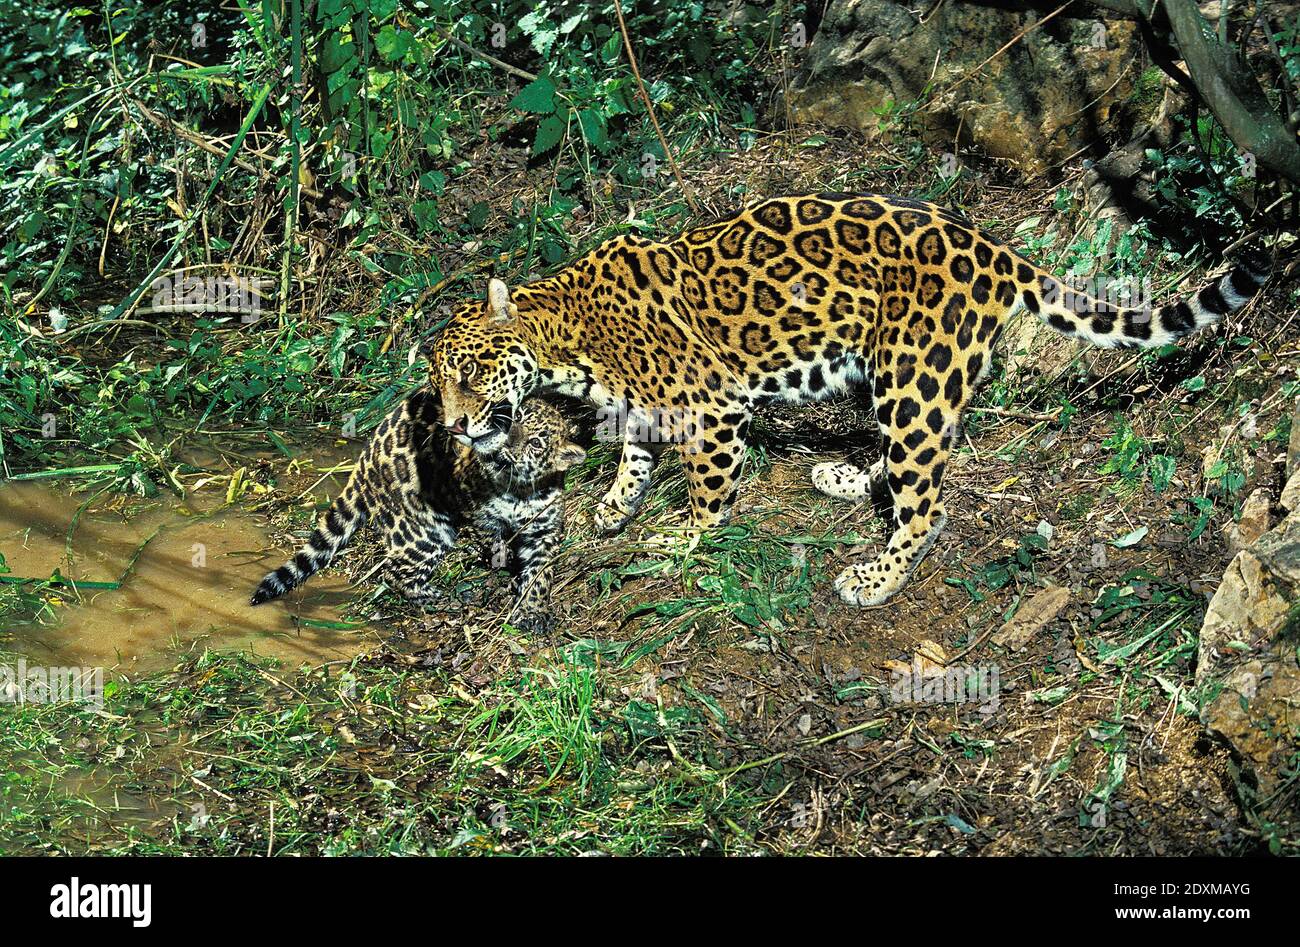 Jaguar, panthera onca, Mother and Cub Stock Photo